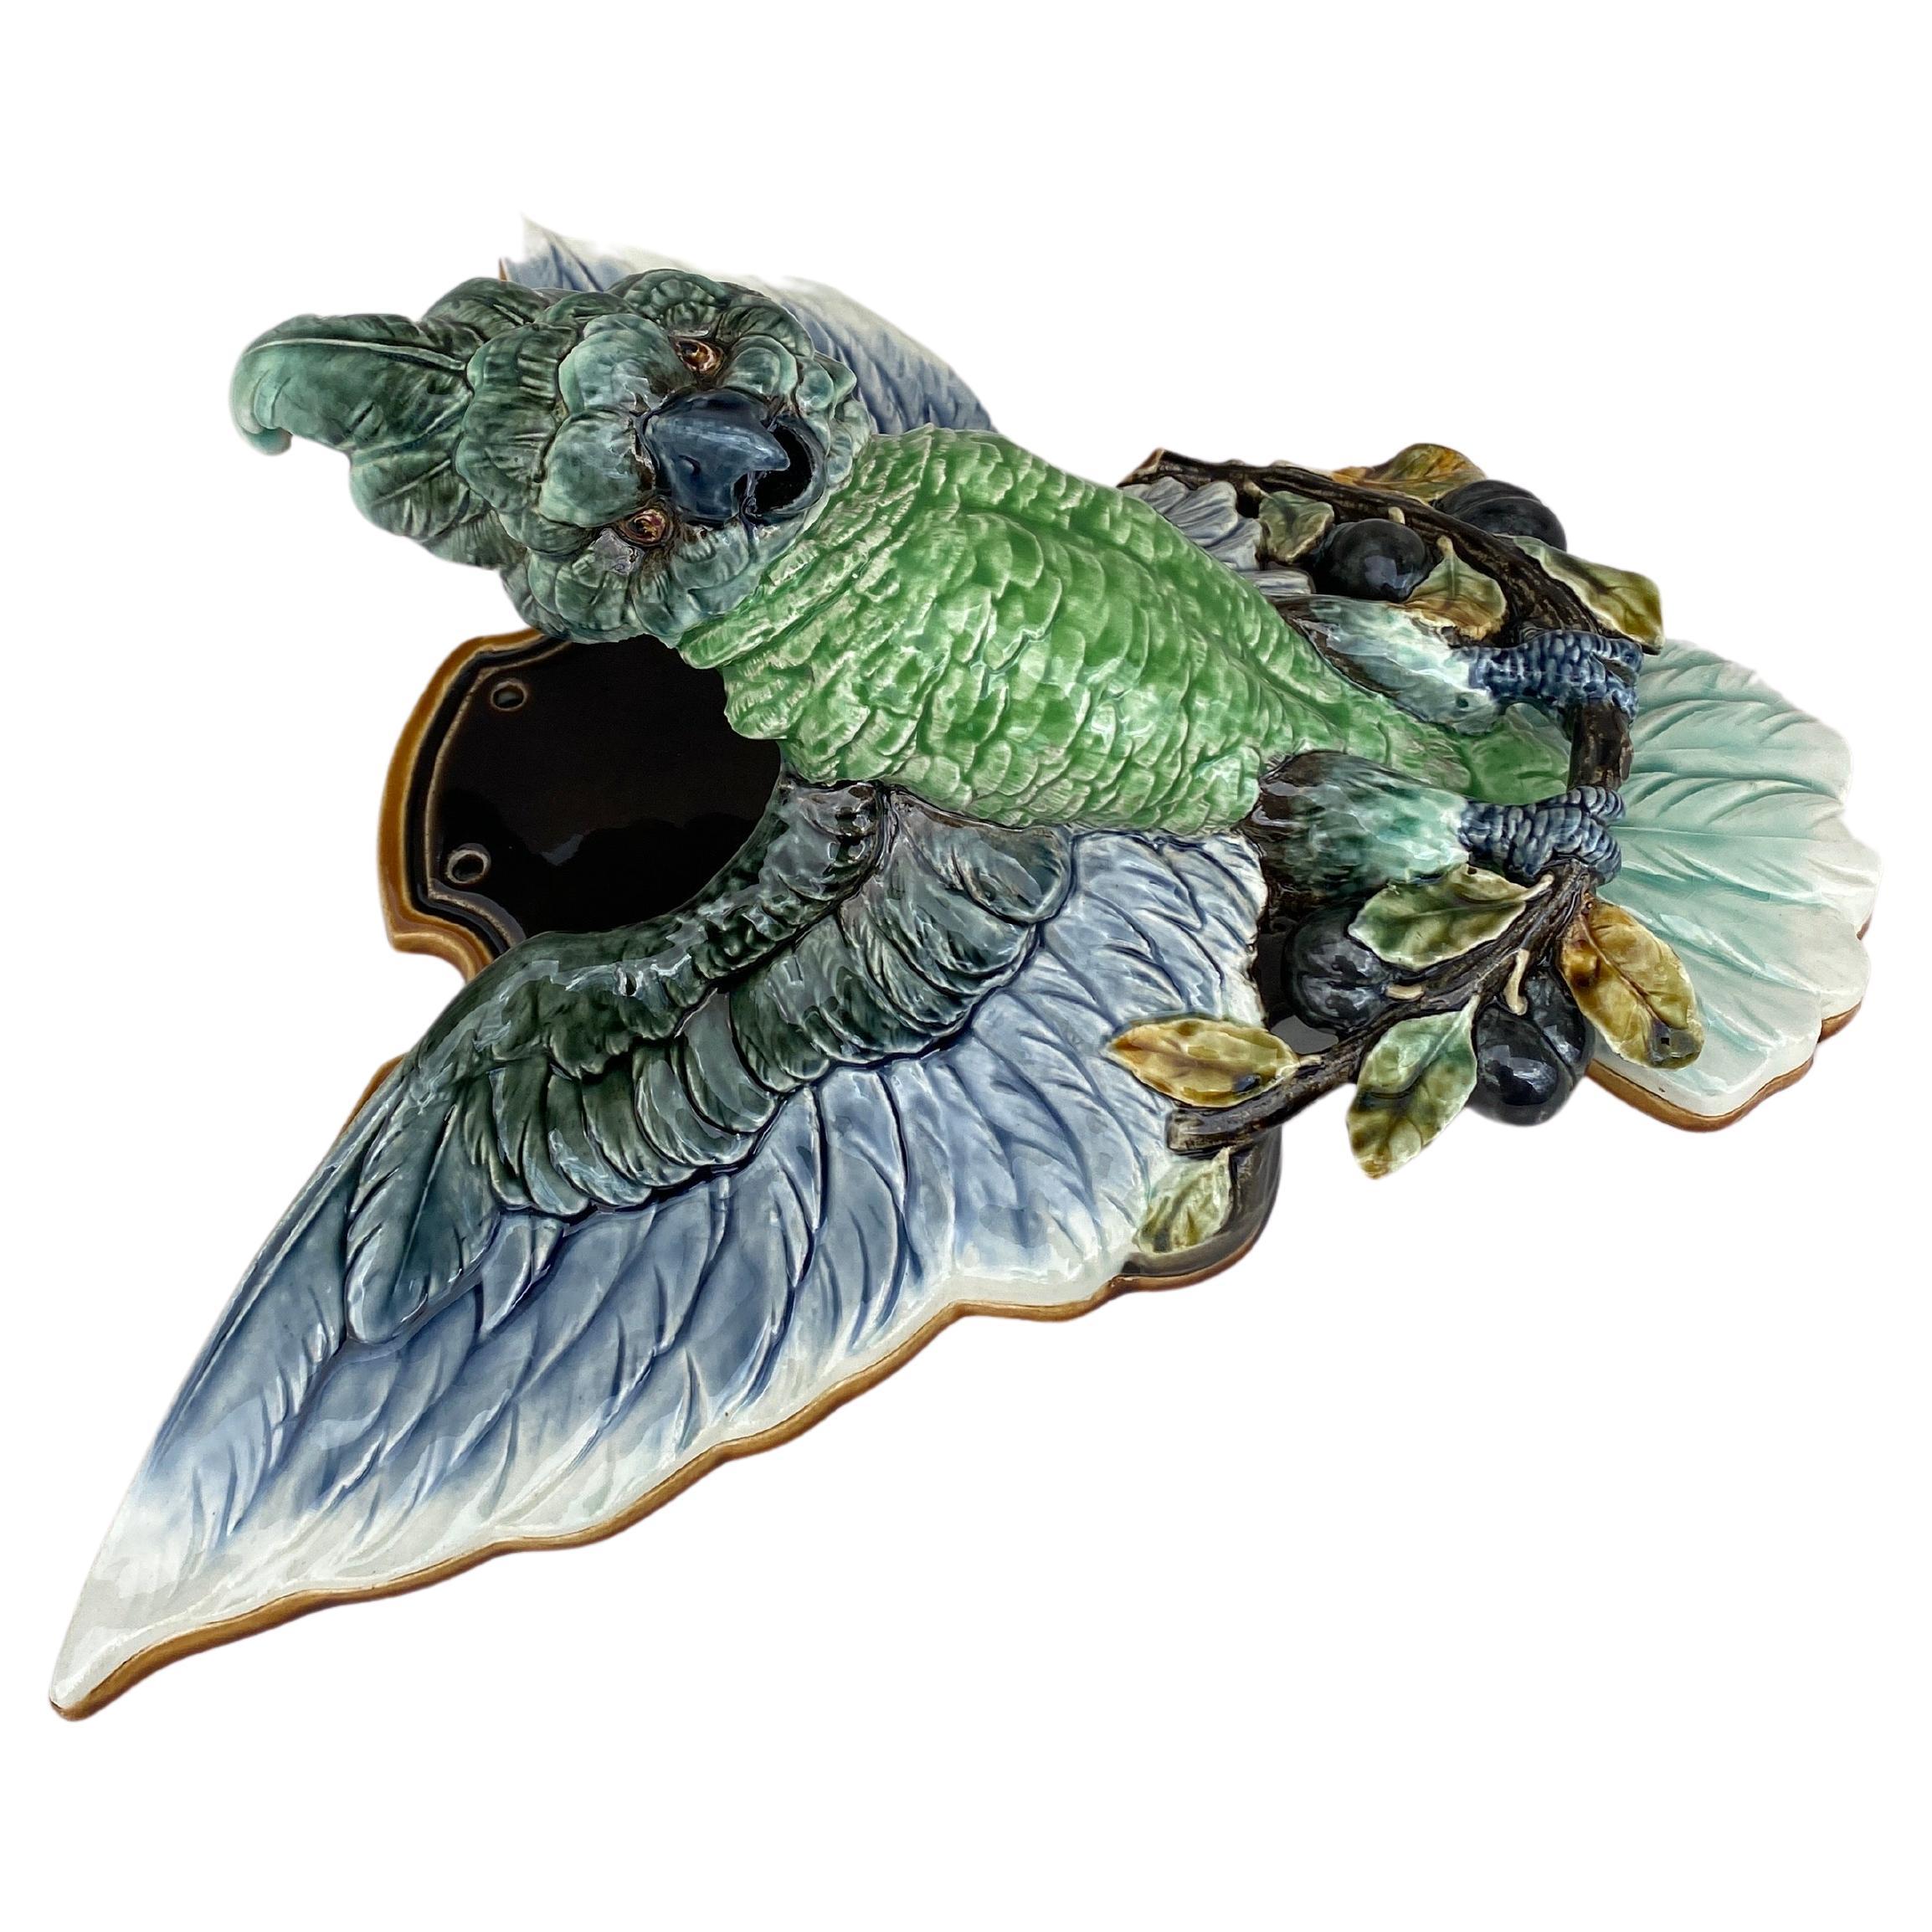 Seltene Französisch Majolika Papagei Kakadu Wandtasche Choisy Le Roi, CIRCA 1890.
Äußerst seltene grüne Farben.